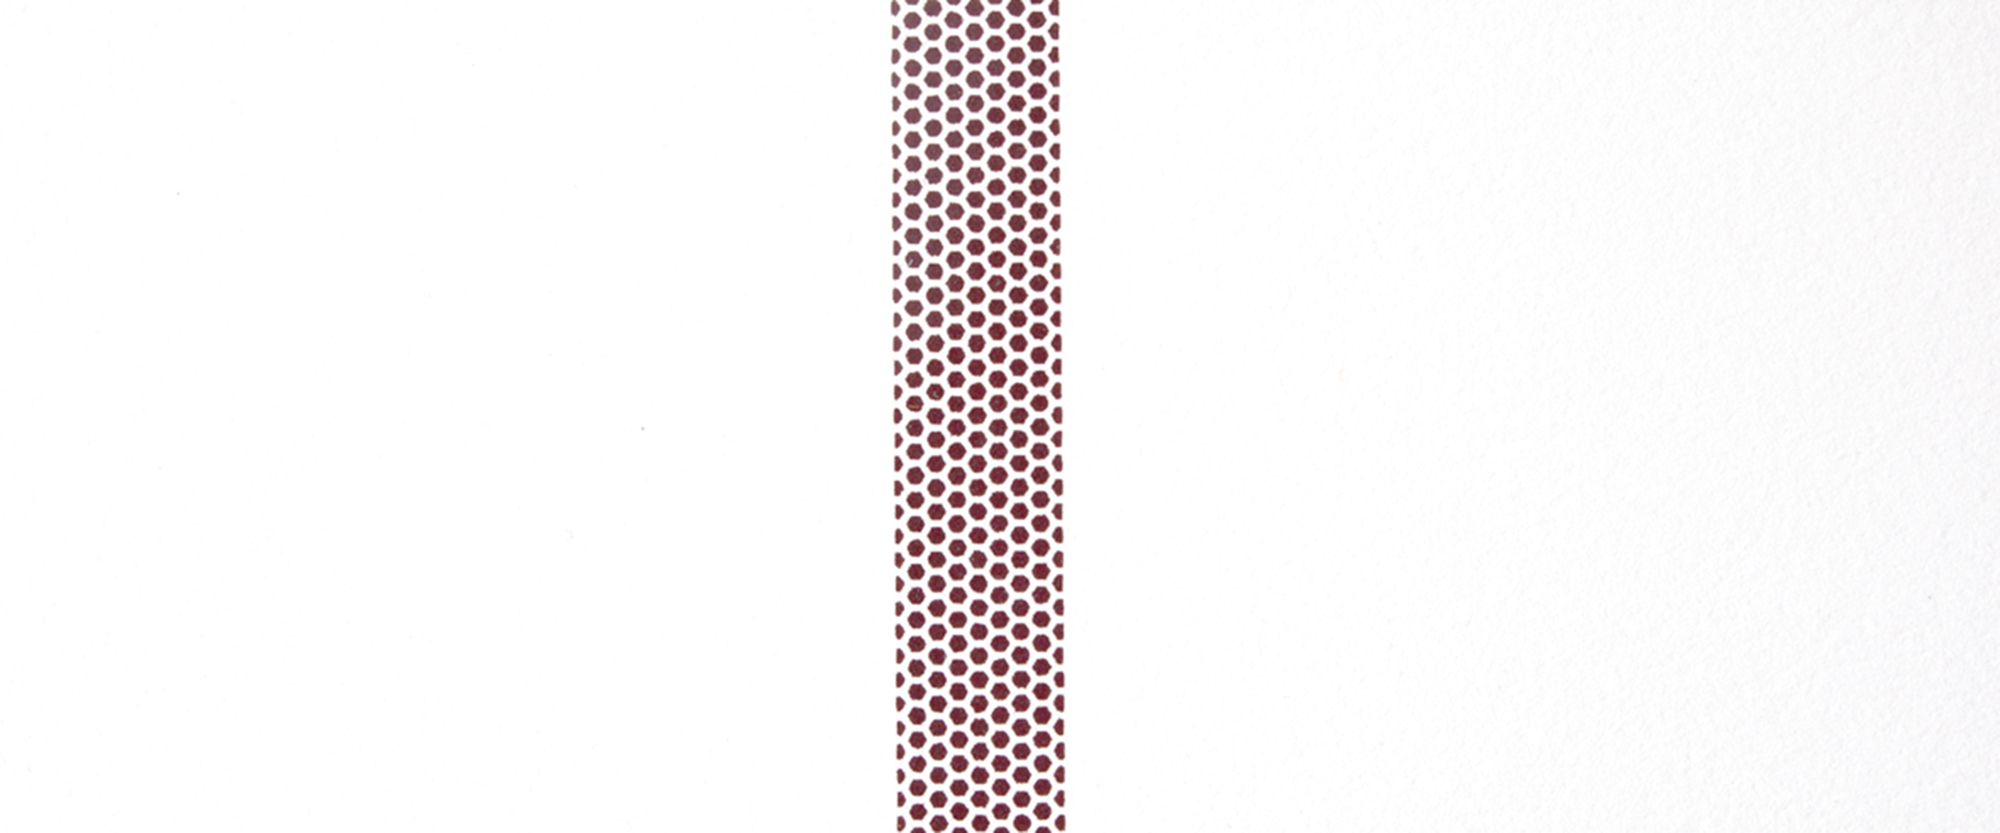 Reibefläche (Detail) - 2019, Siebdruck auf Papier, phosphorhaltige Farbe, 100 x 70 cm